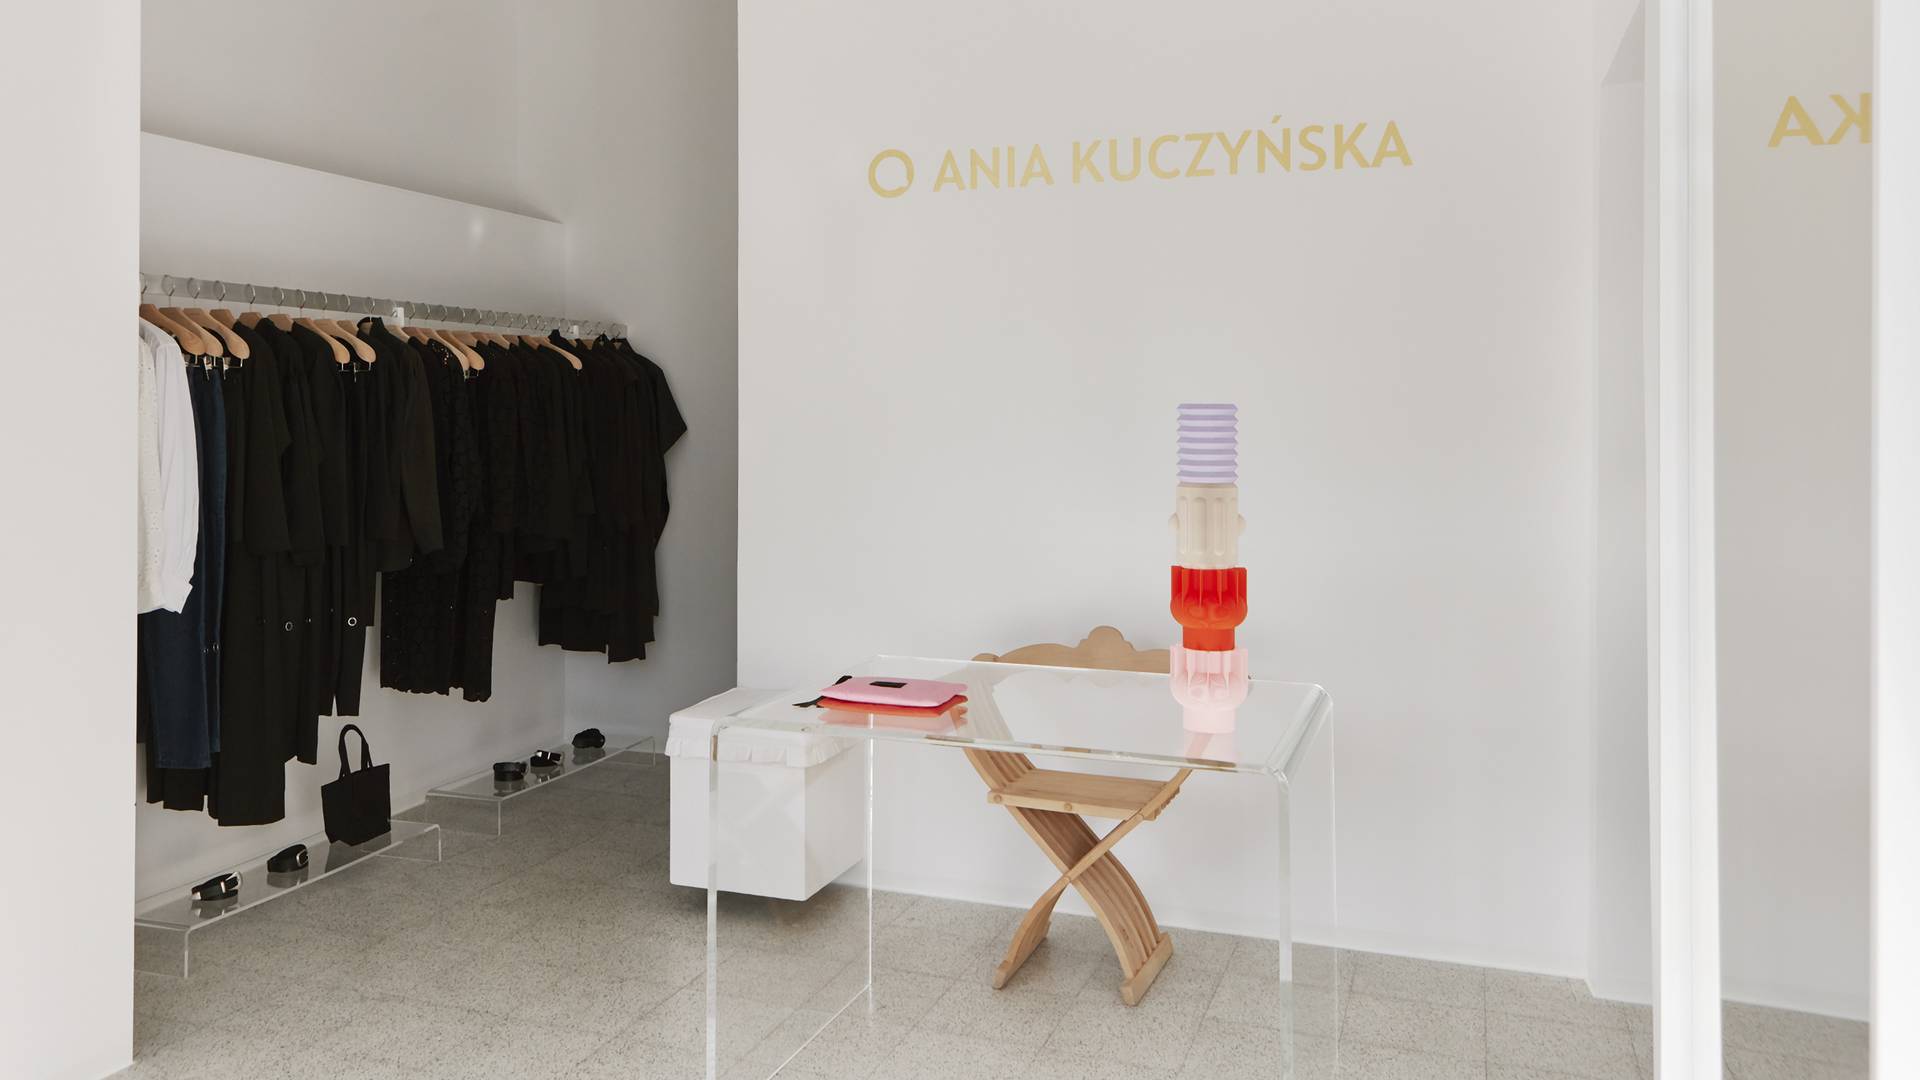 Ania Kuczyńska otworzyła butik na Powiślu. Skąpane w bieli miejsce to początek nowego rozdziału 